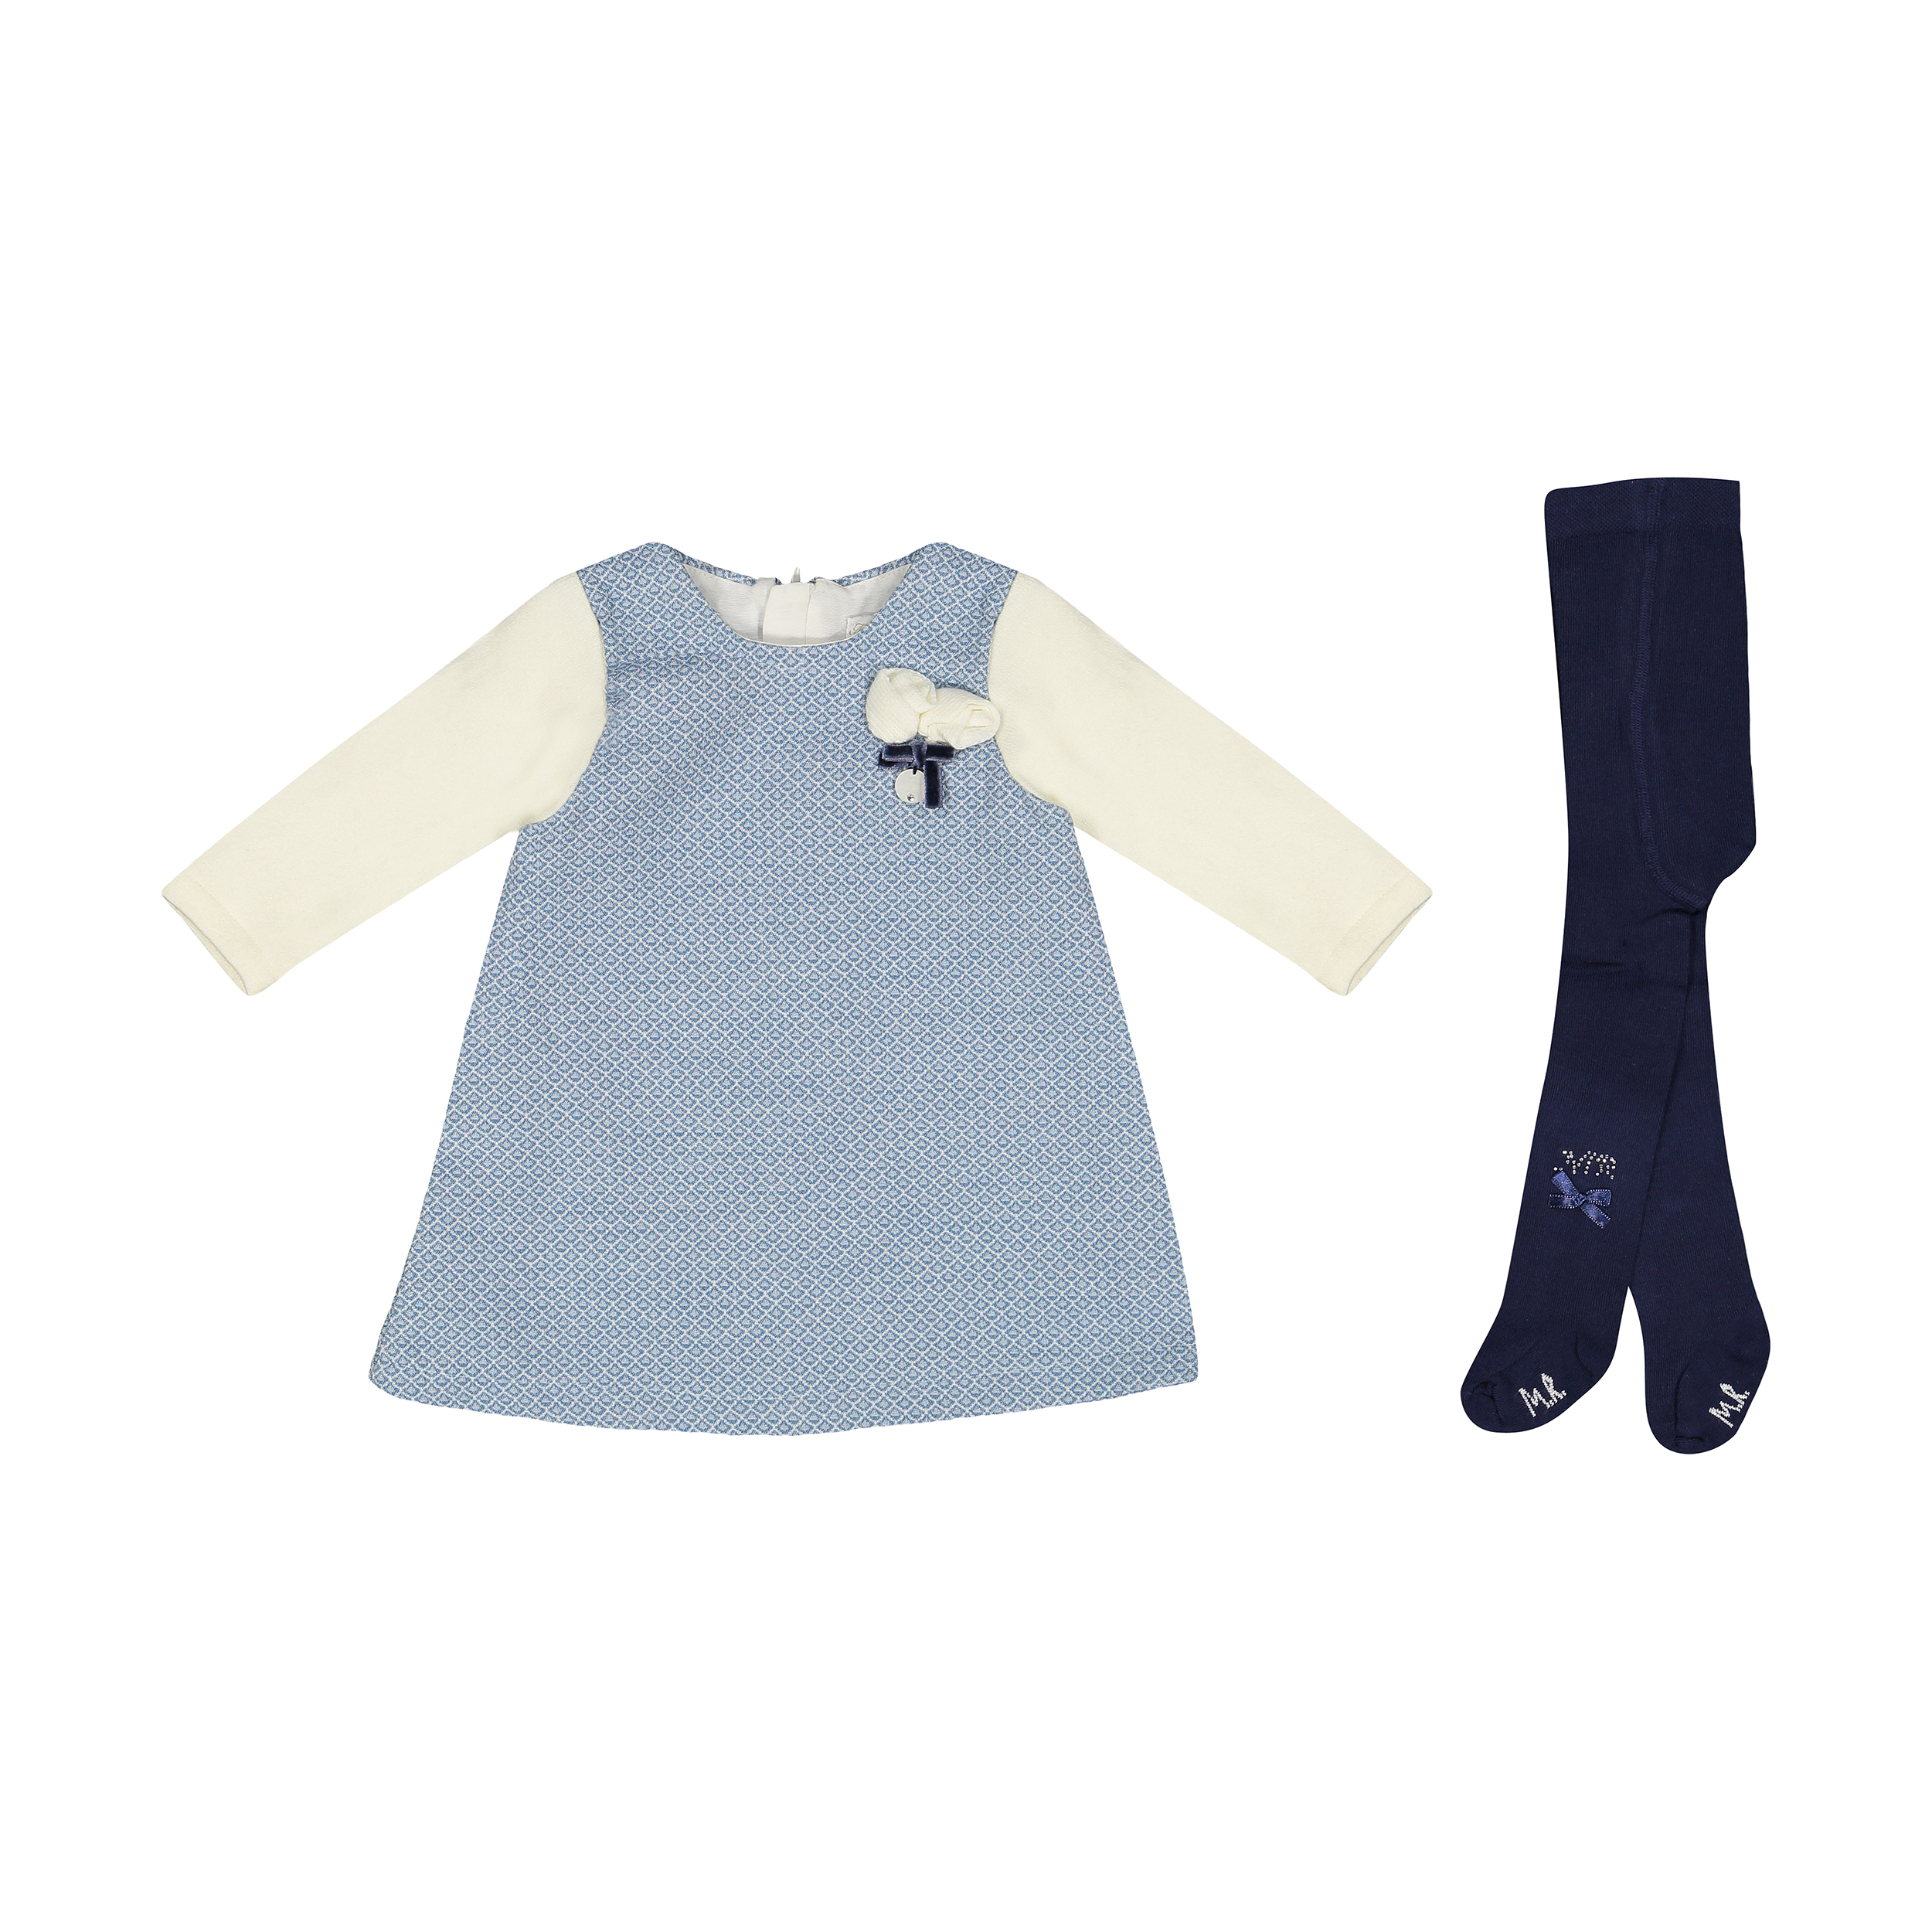 ست پیراهن و جوراب شلواری نوزادی دخترانه مونا رزا مدل 2141122-50 -  - 1